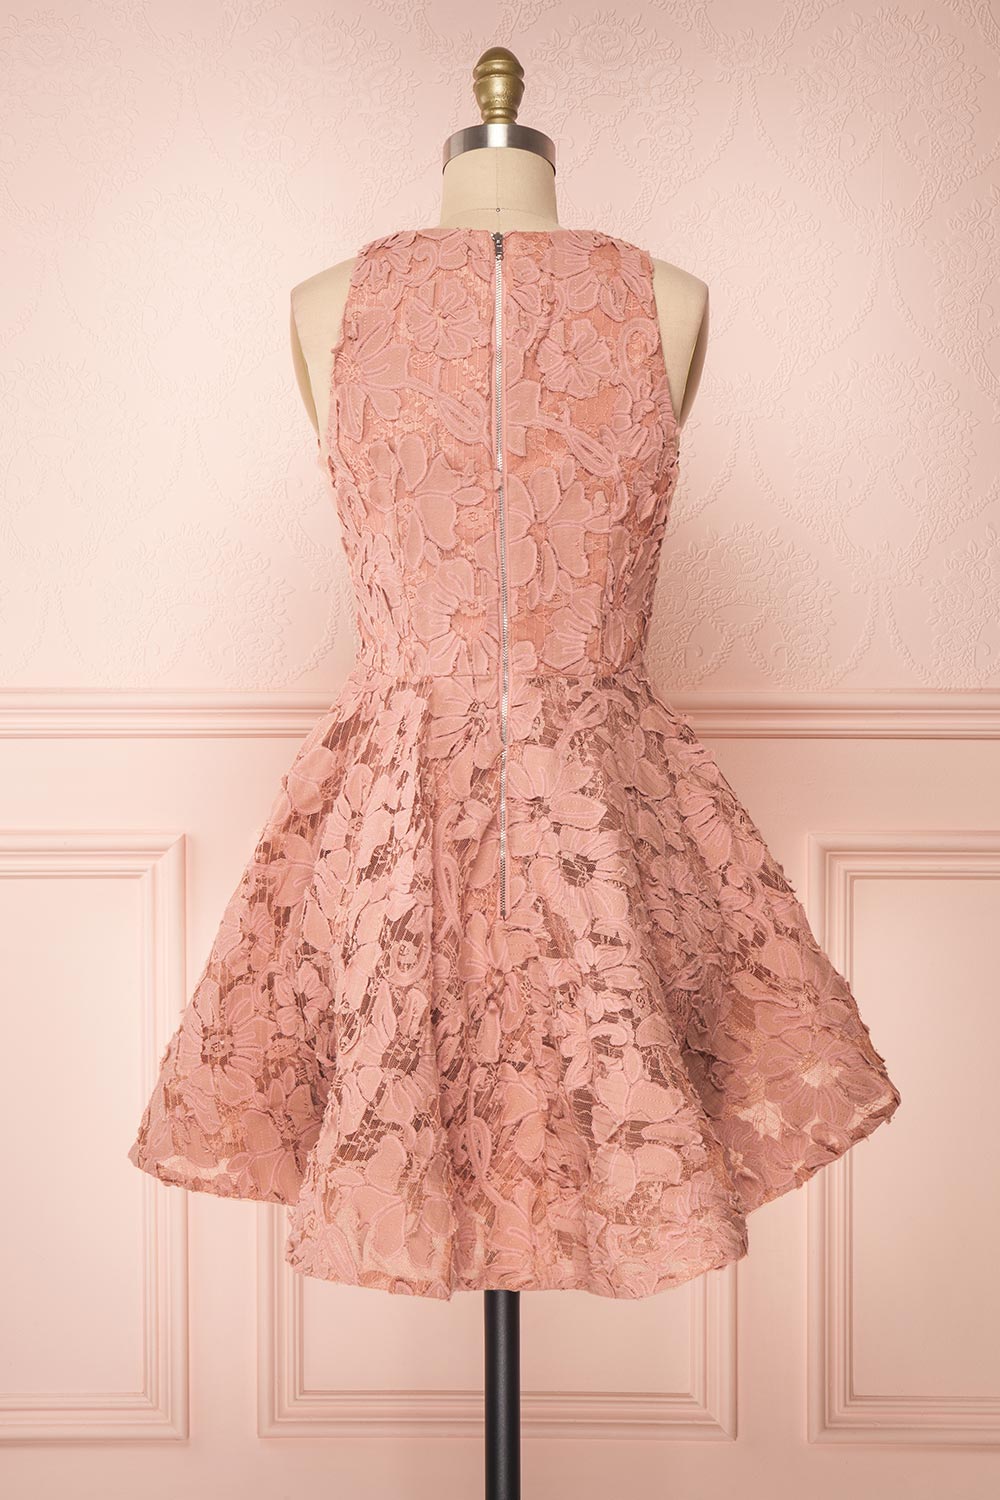 Sissilou Blush Lace Short A-Line Party Dress | Boutique 1861 back view 